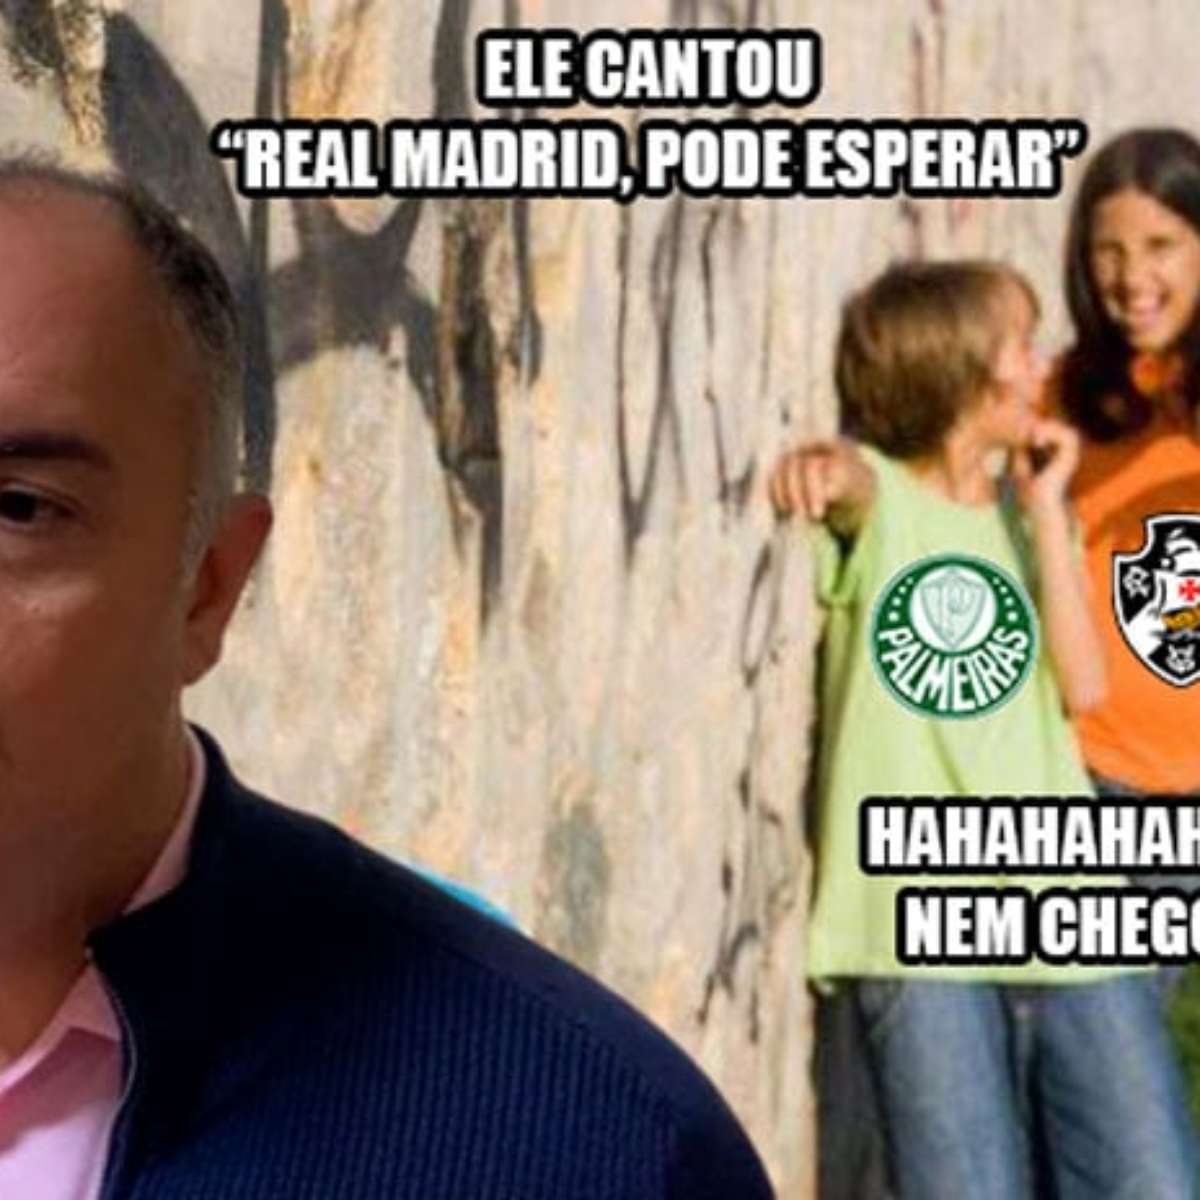 Veja os melhores memes da derrota do Flamengo no Mundial da Fifa - Fotos -  R7 Fora de Jogo